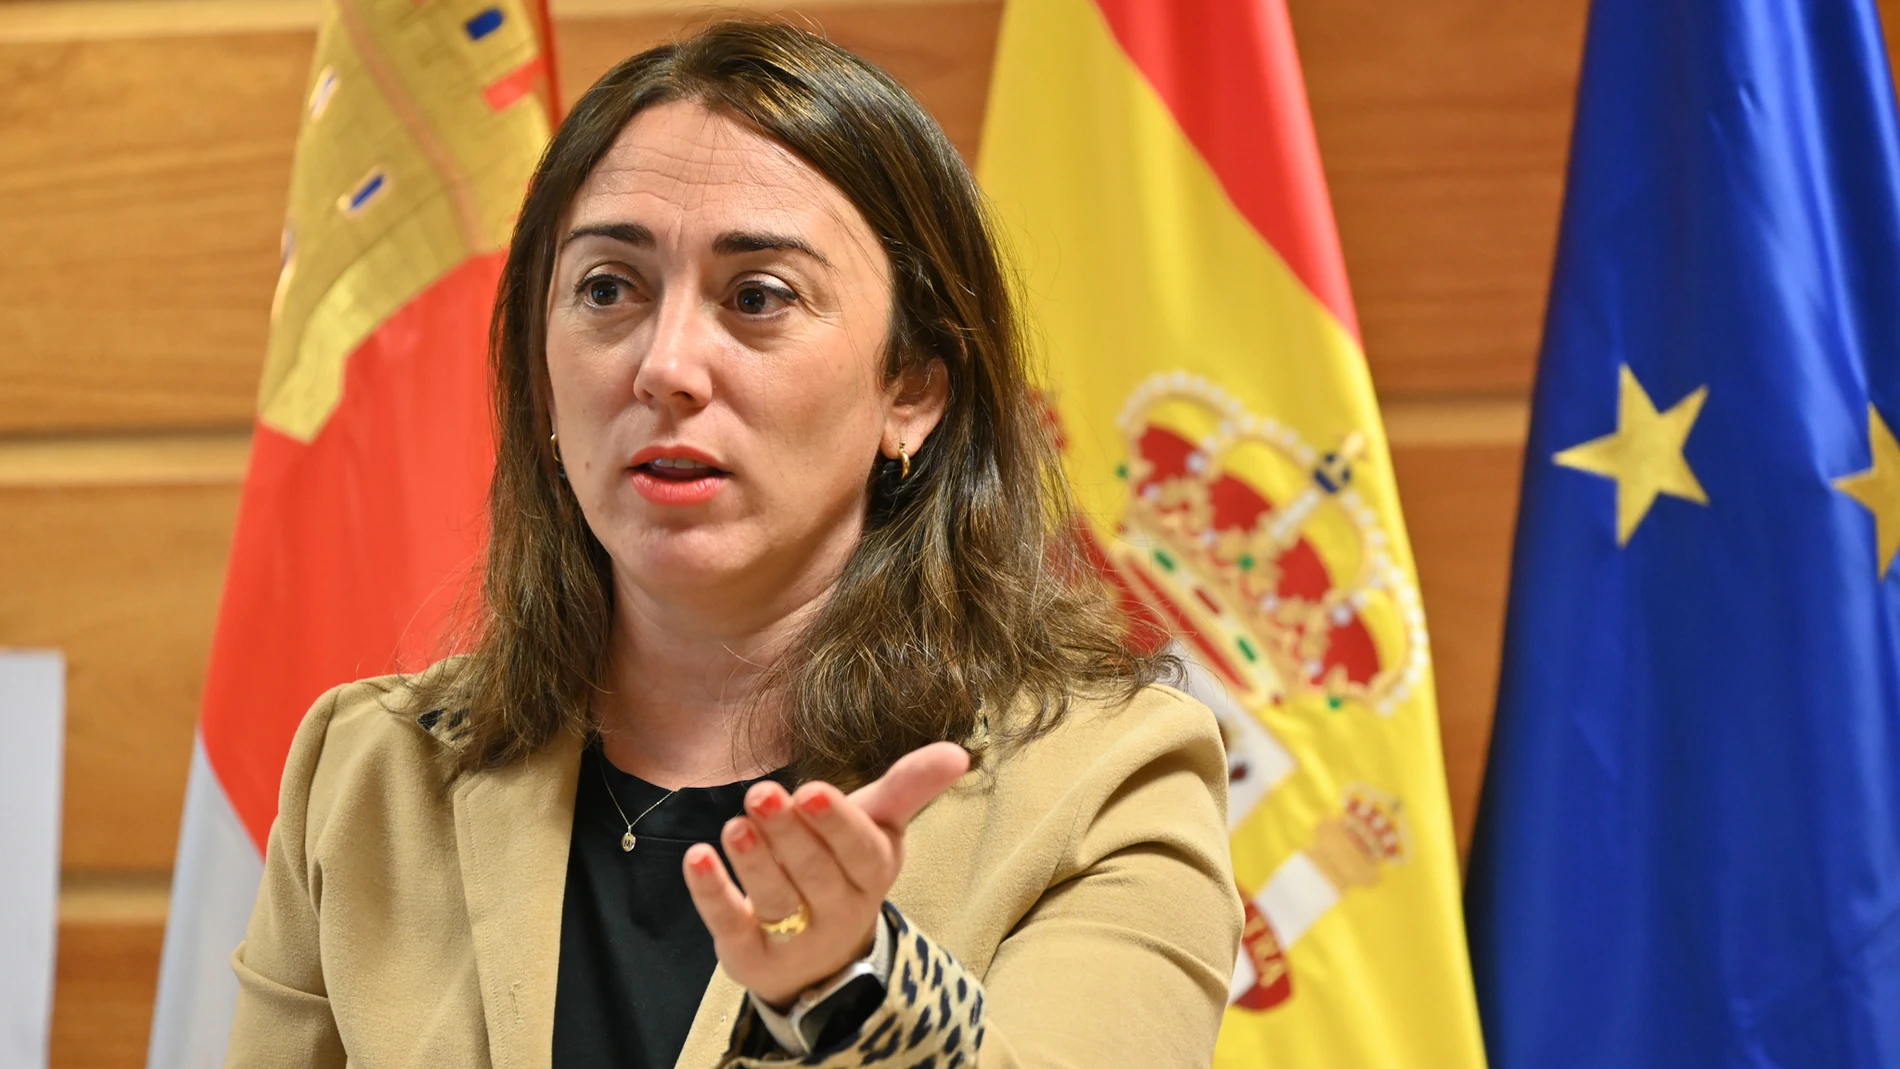 Valoración de la consejera María González Corral